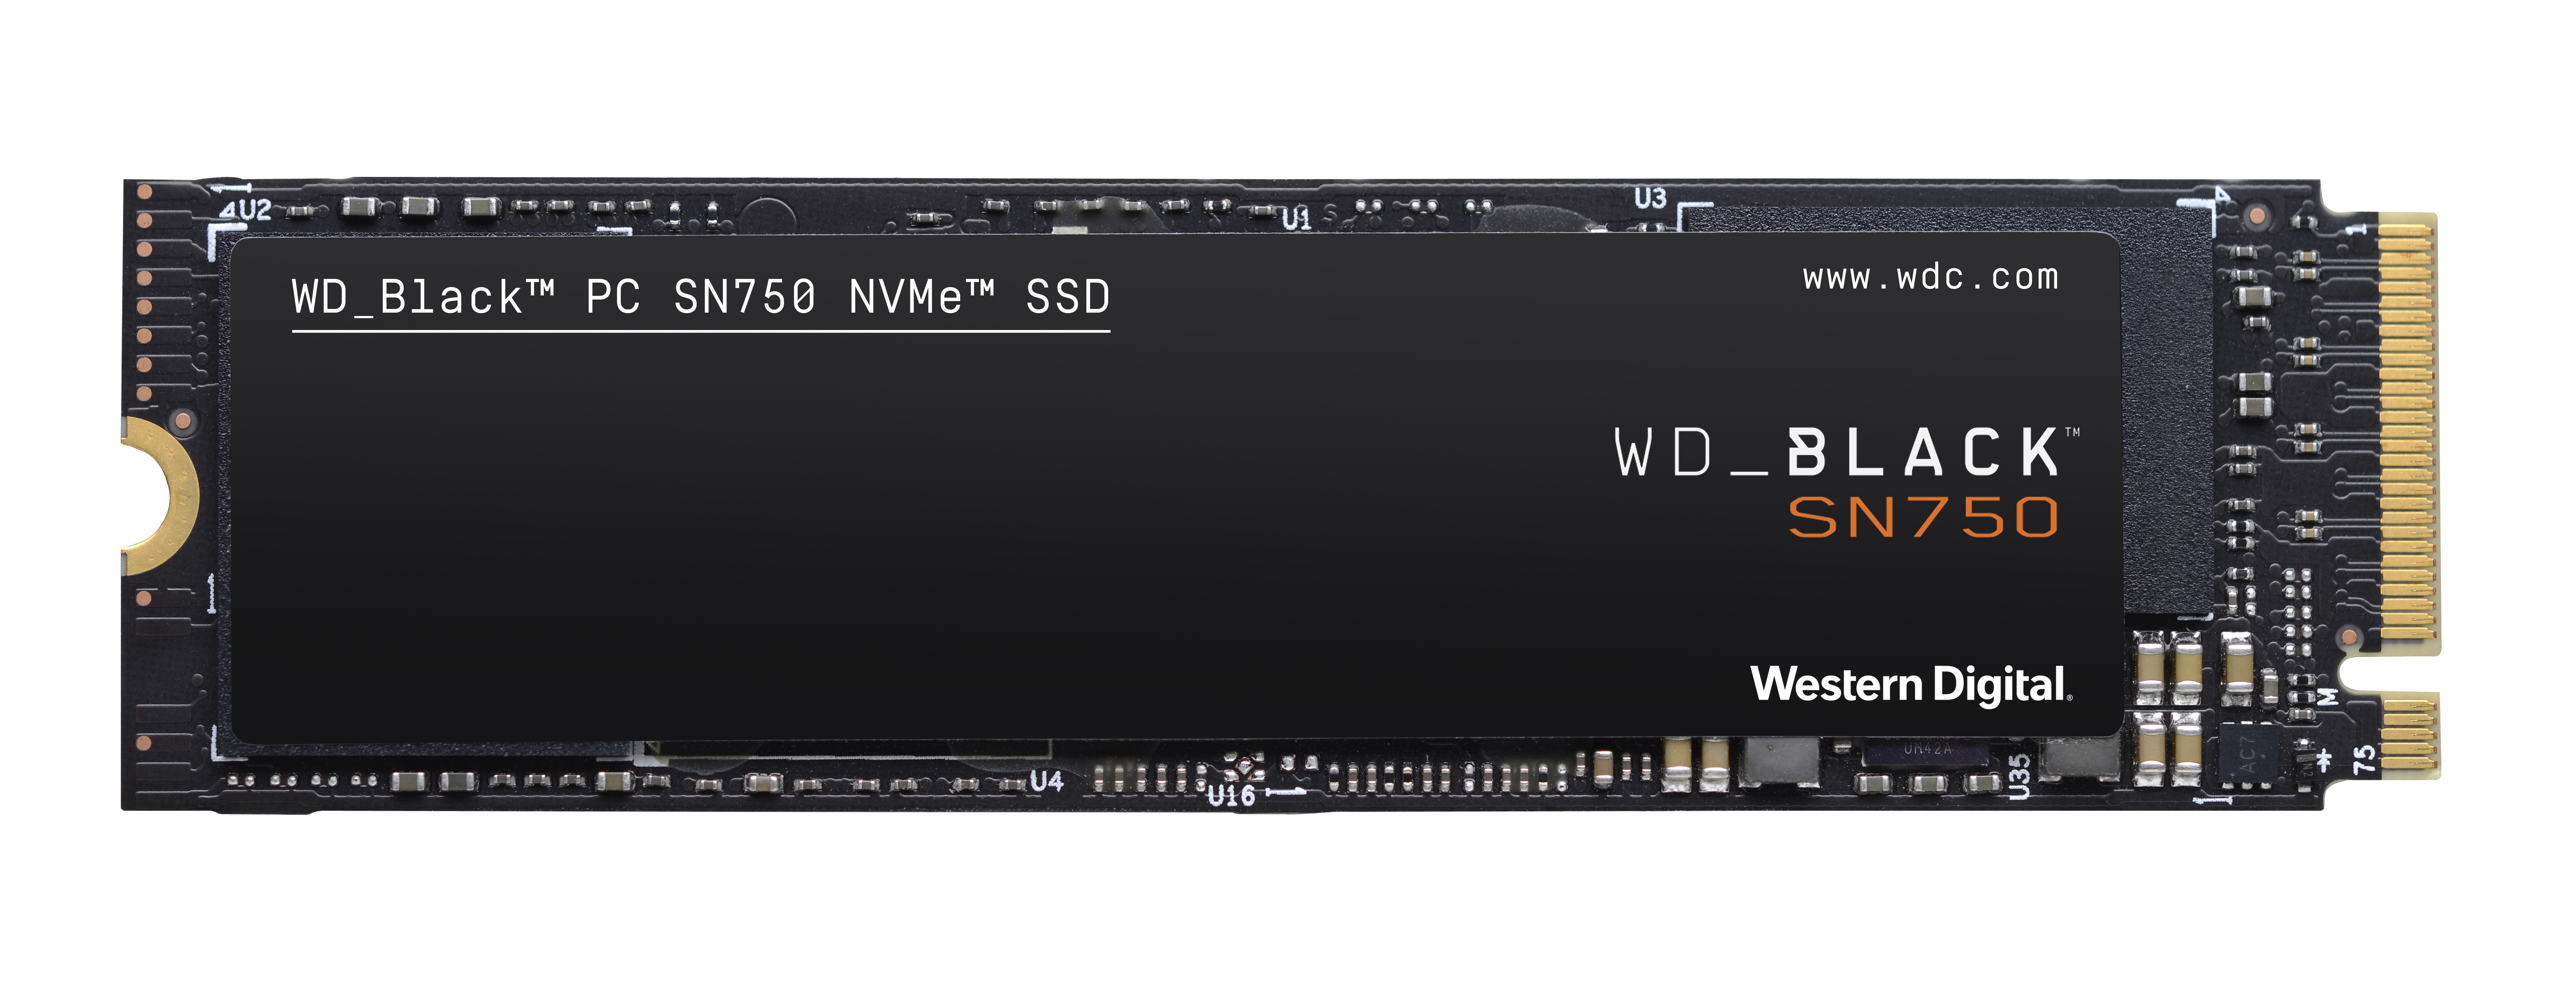 Speicher, NVMe™ SN750 Speicher WD_BLACK GB 500 intern M.2, Interner SSD,